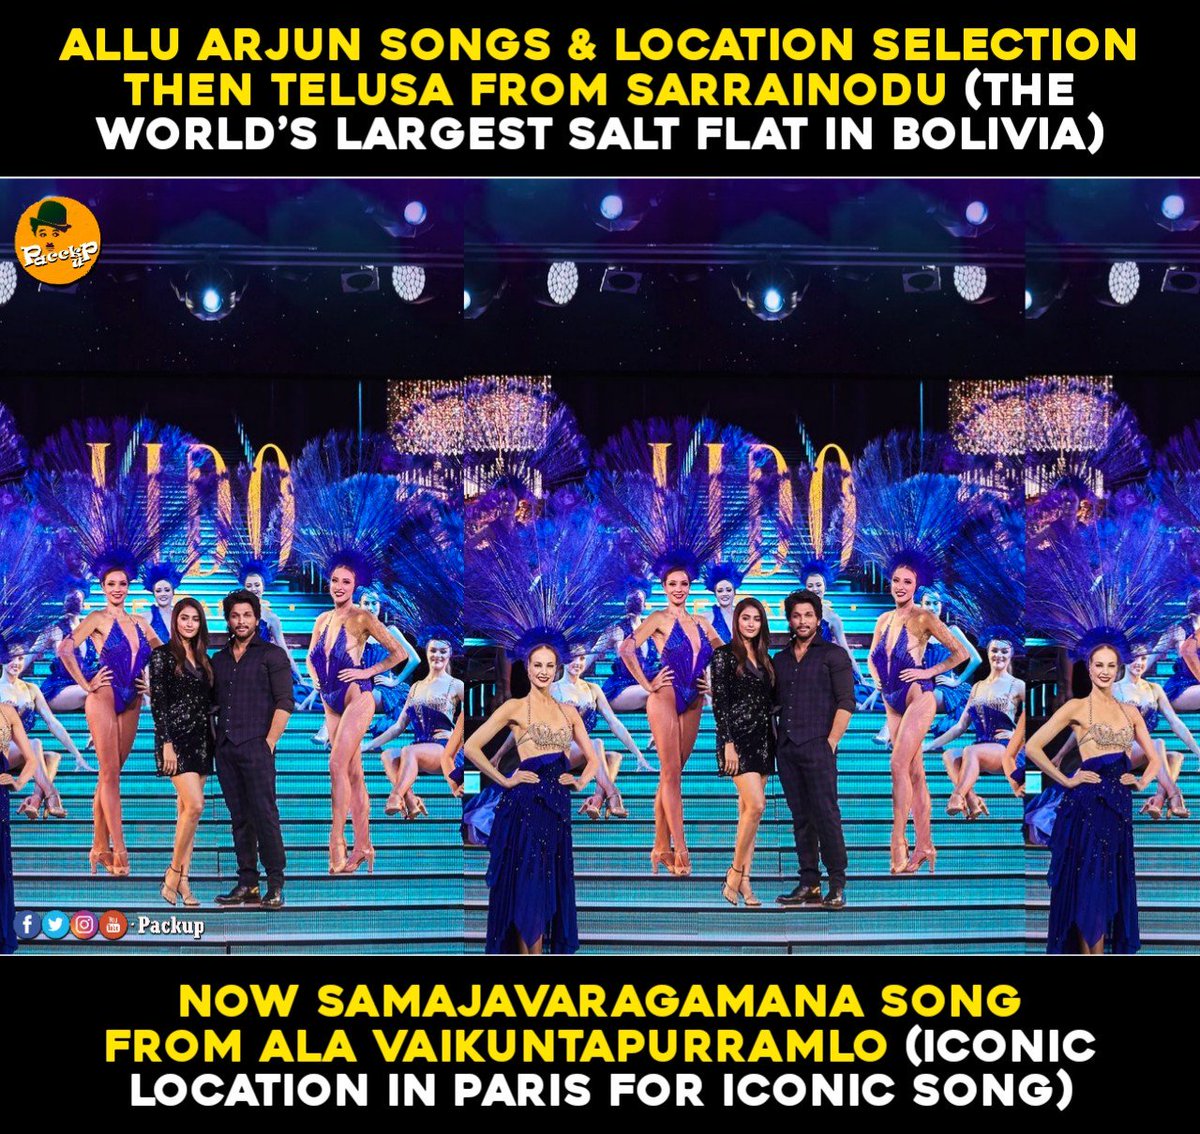 #AlluArjun songs & location selection👌
Then 
#TelusaTelusa from #Sarrainodu 

Now 
#Samajavaragamana from #AlaVaikunthapurramuloo